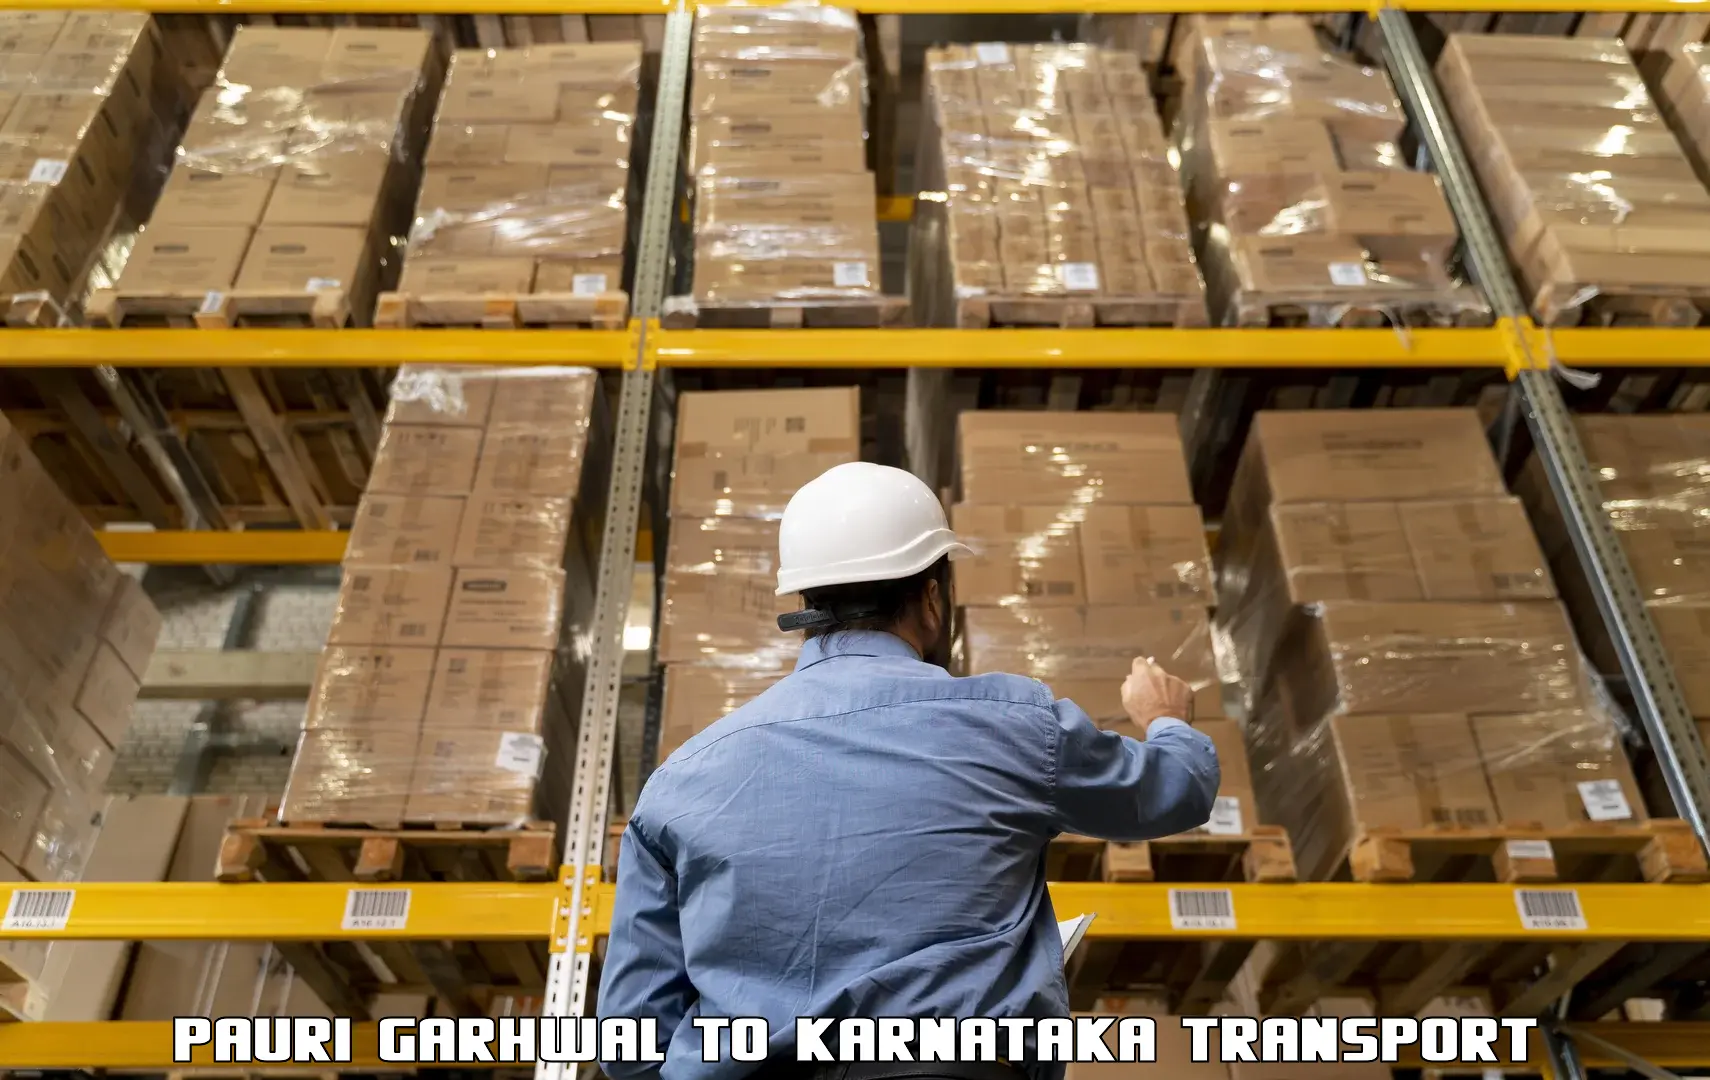 Parcel transport services Pauri Garhwal to Kanjarakatte